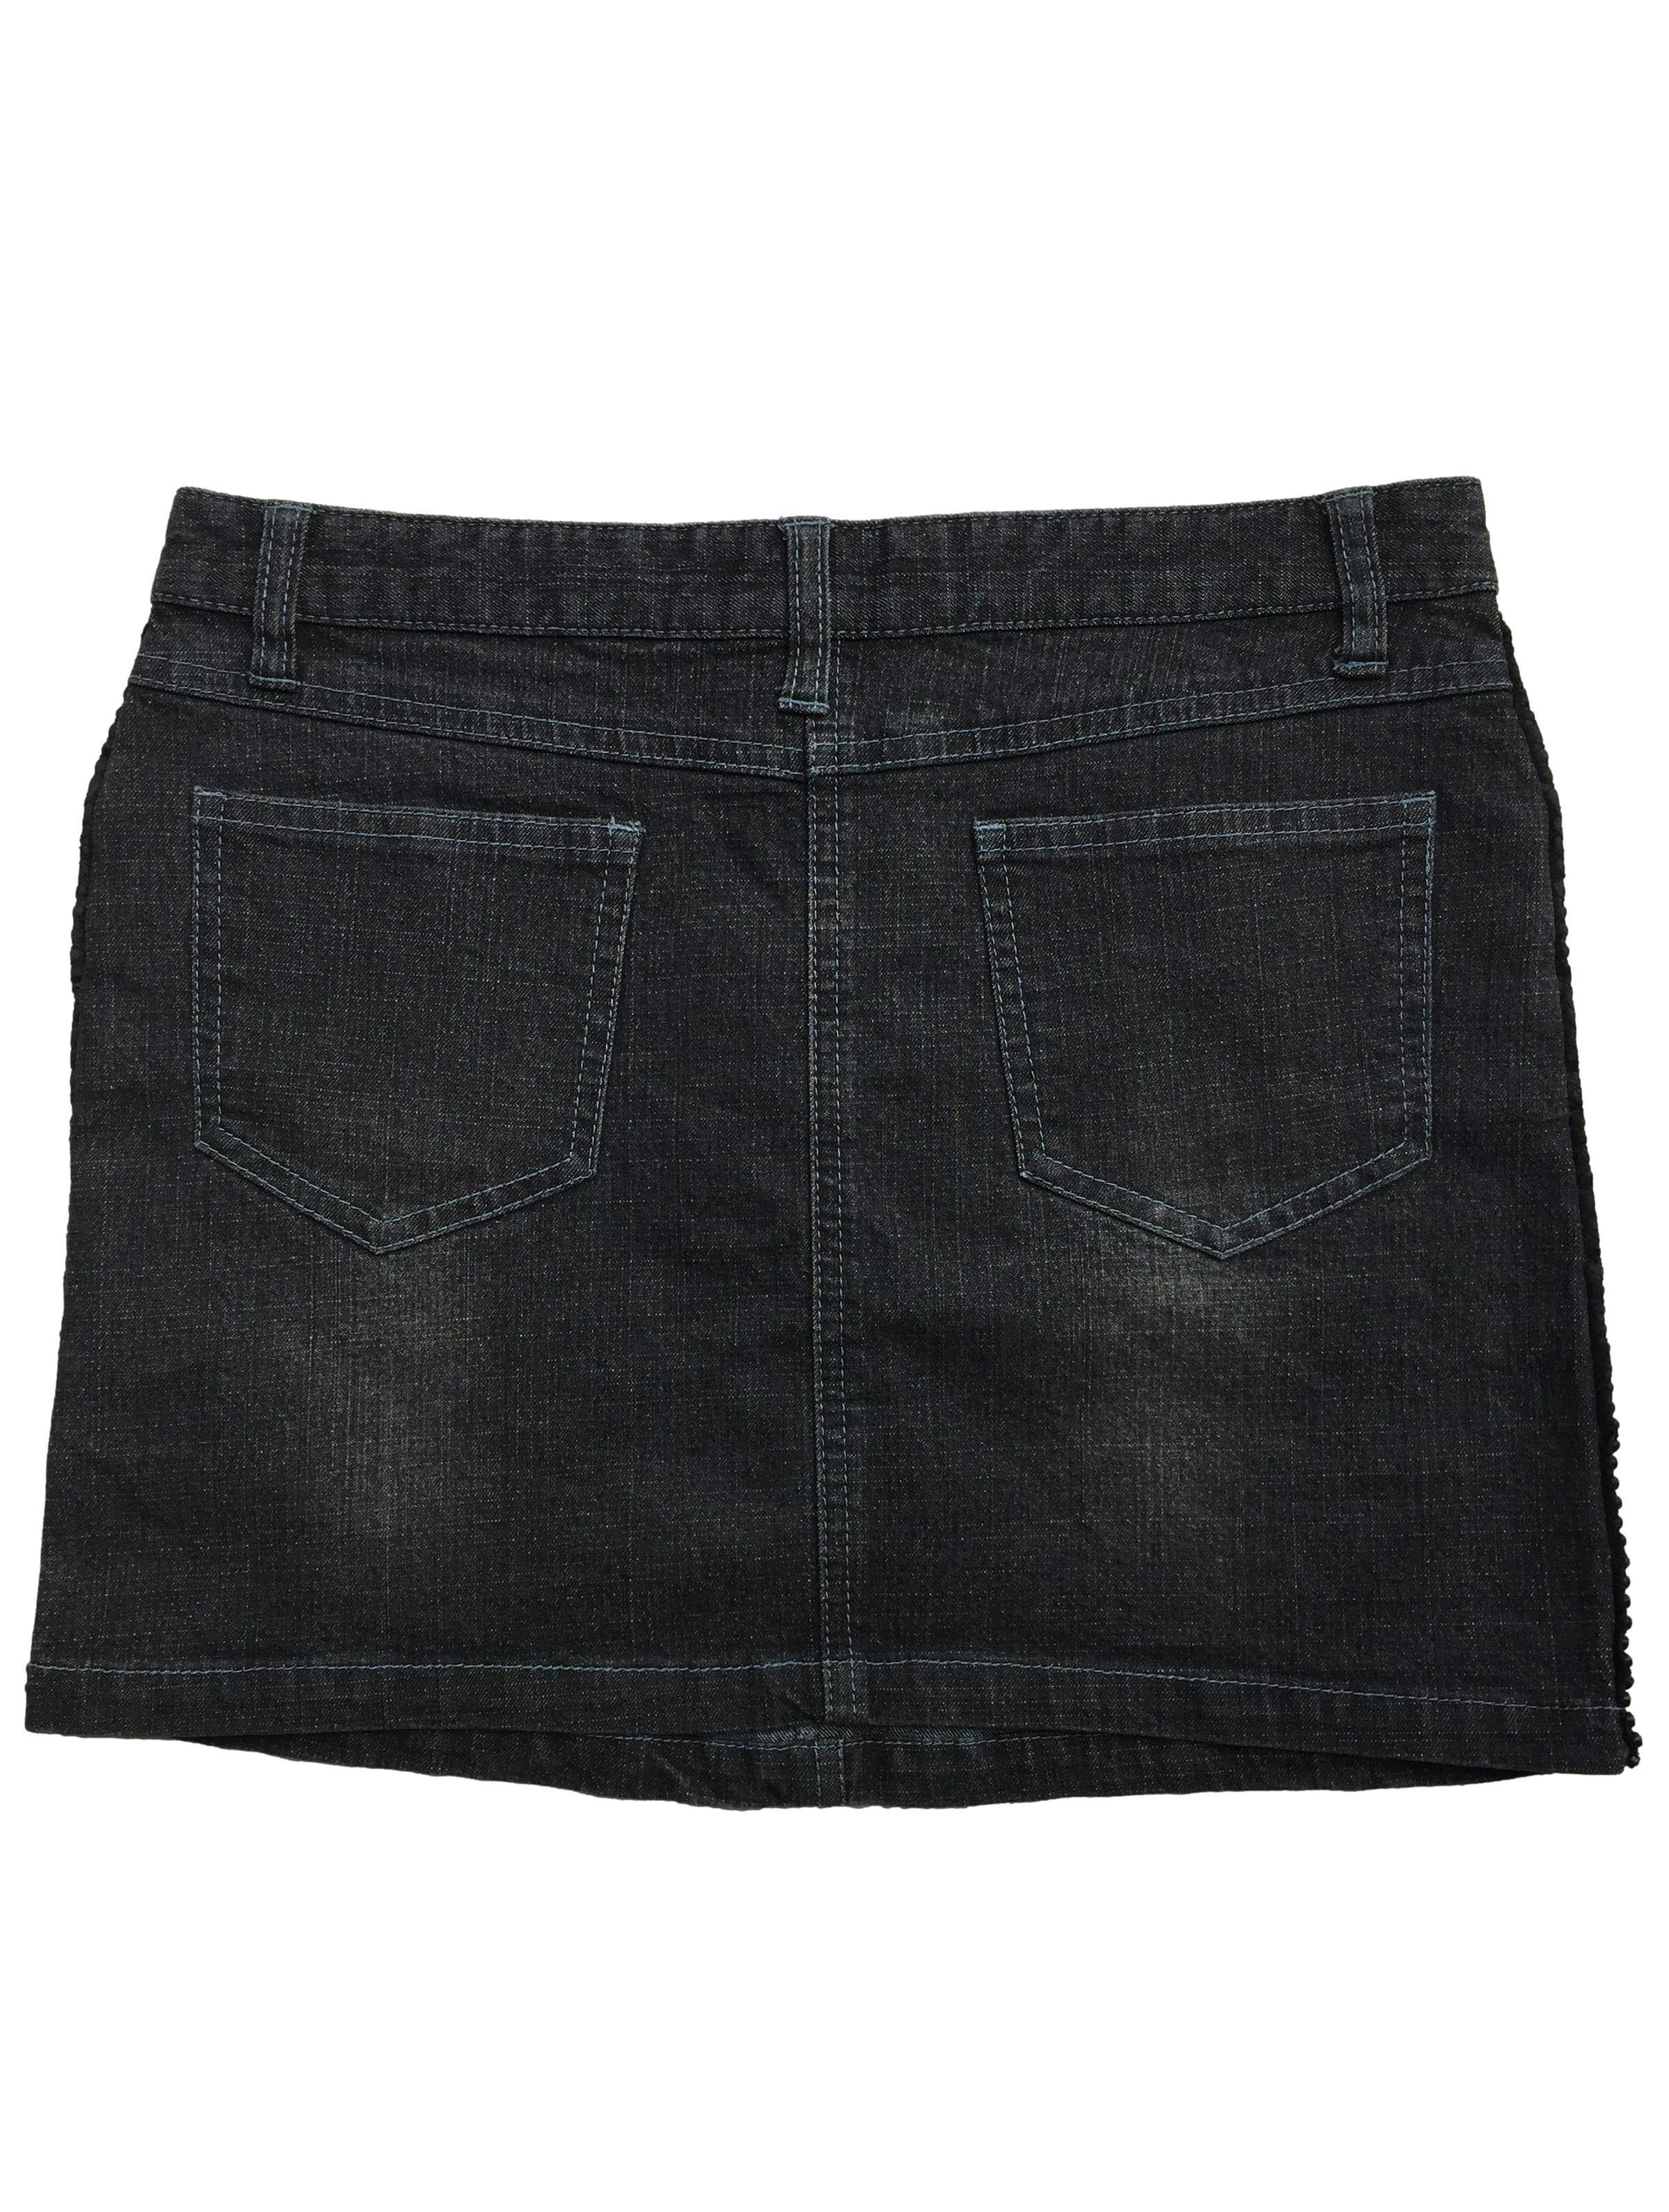 Falda negra, efecto lavado, aplicaciones de brillantes en los laterales. Cintura: 70cm, Largo: 34cm